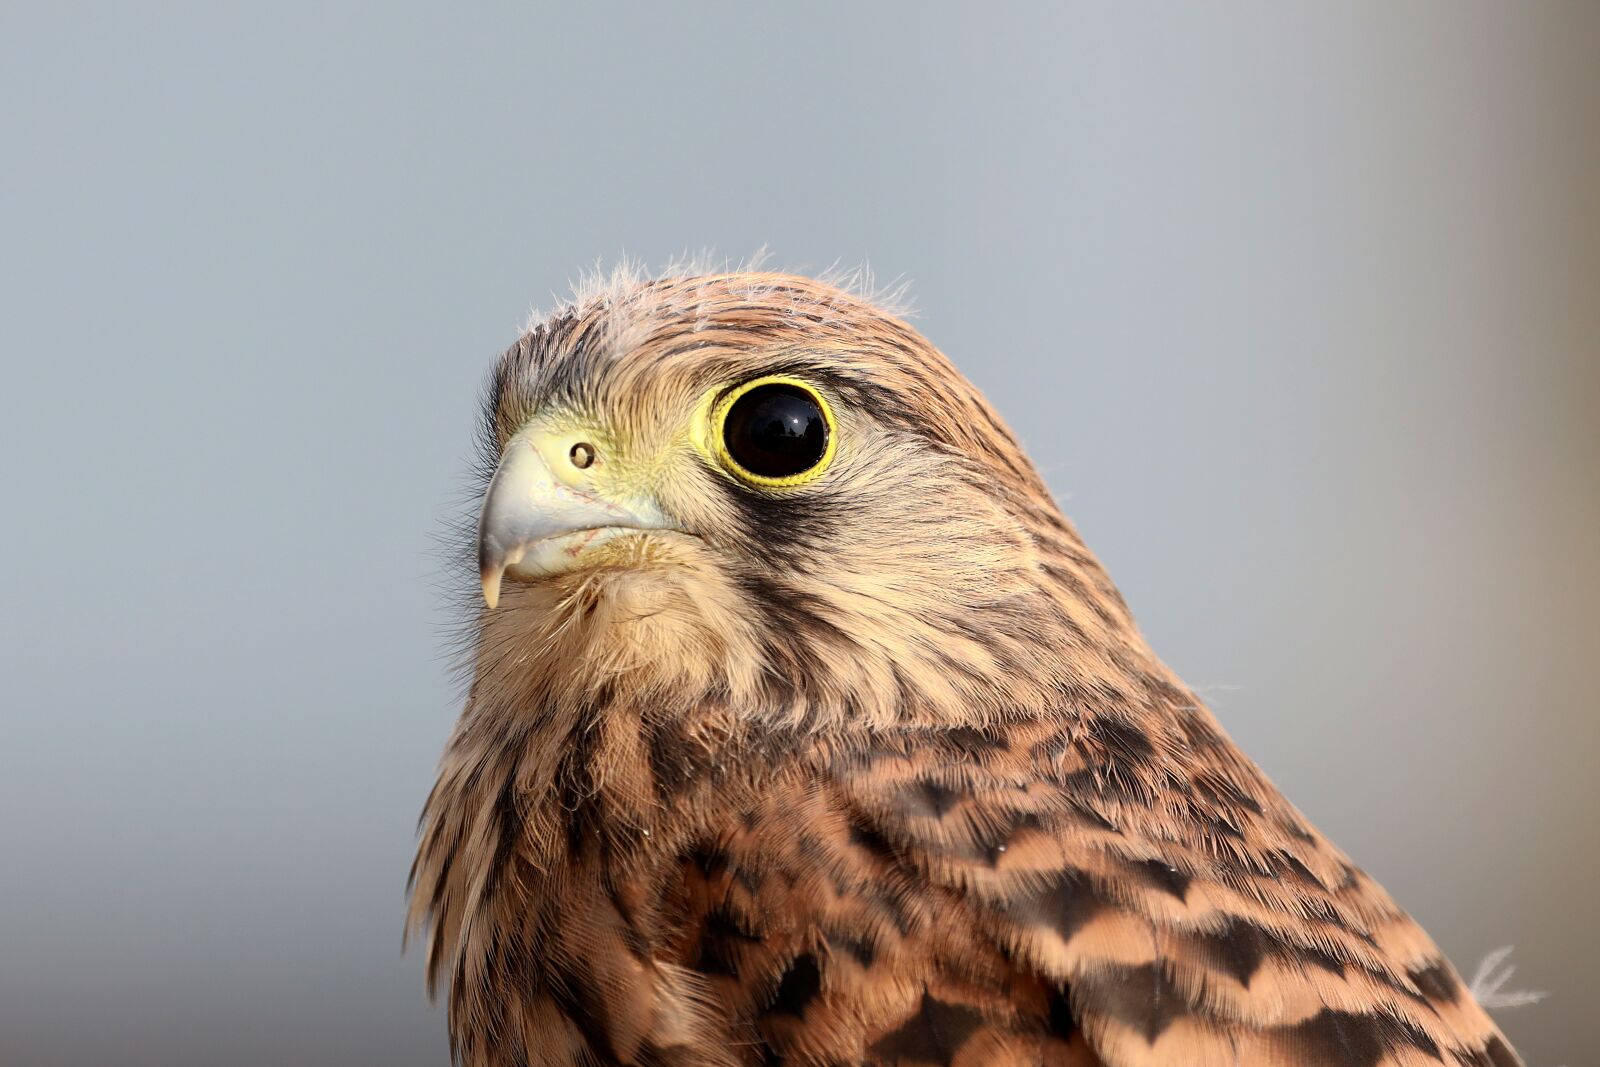 Canon EOS R sample photo. Falcon, young hawk, bird photography